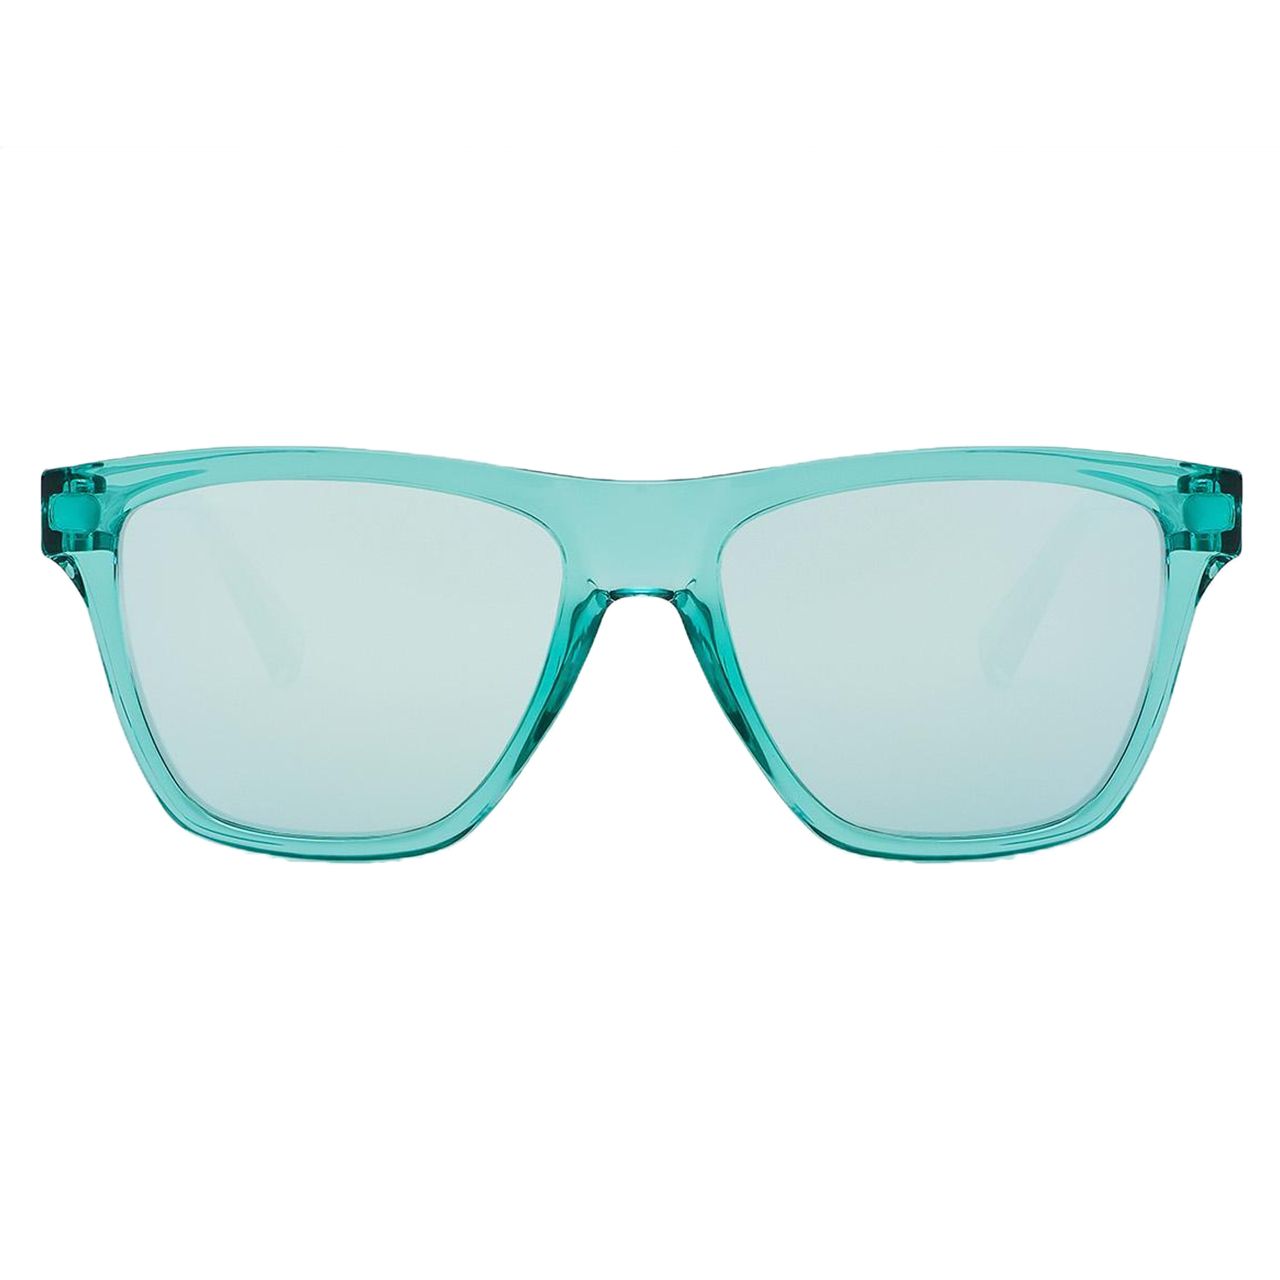  عینک آفتابی زنانه هاوکرز سری Tiffany Blue Chrome One Ls مدل LIFTR13 -  - 5